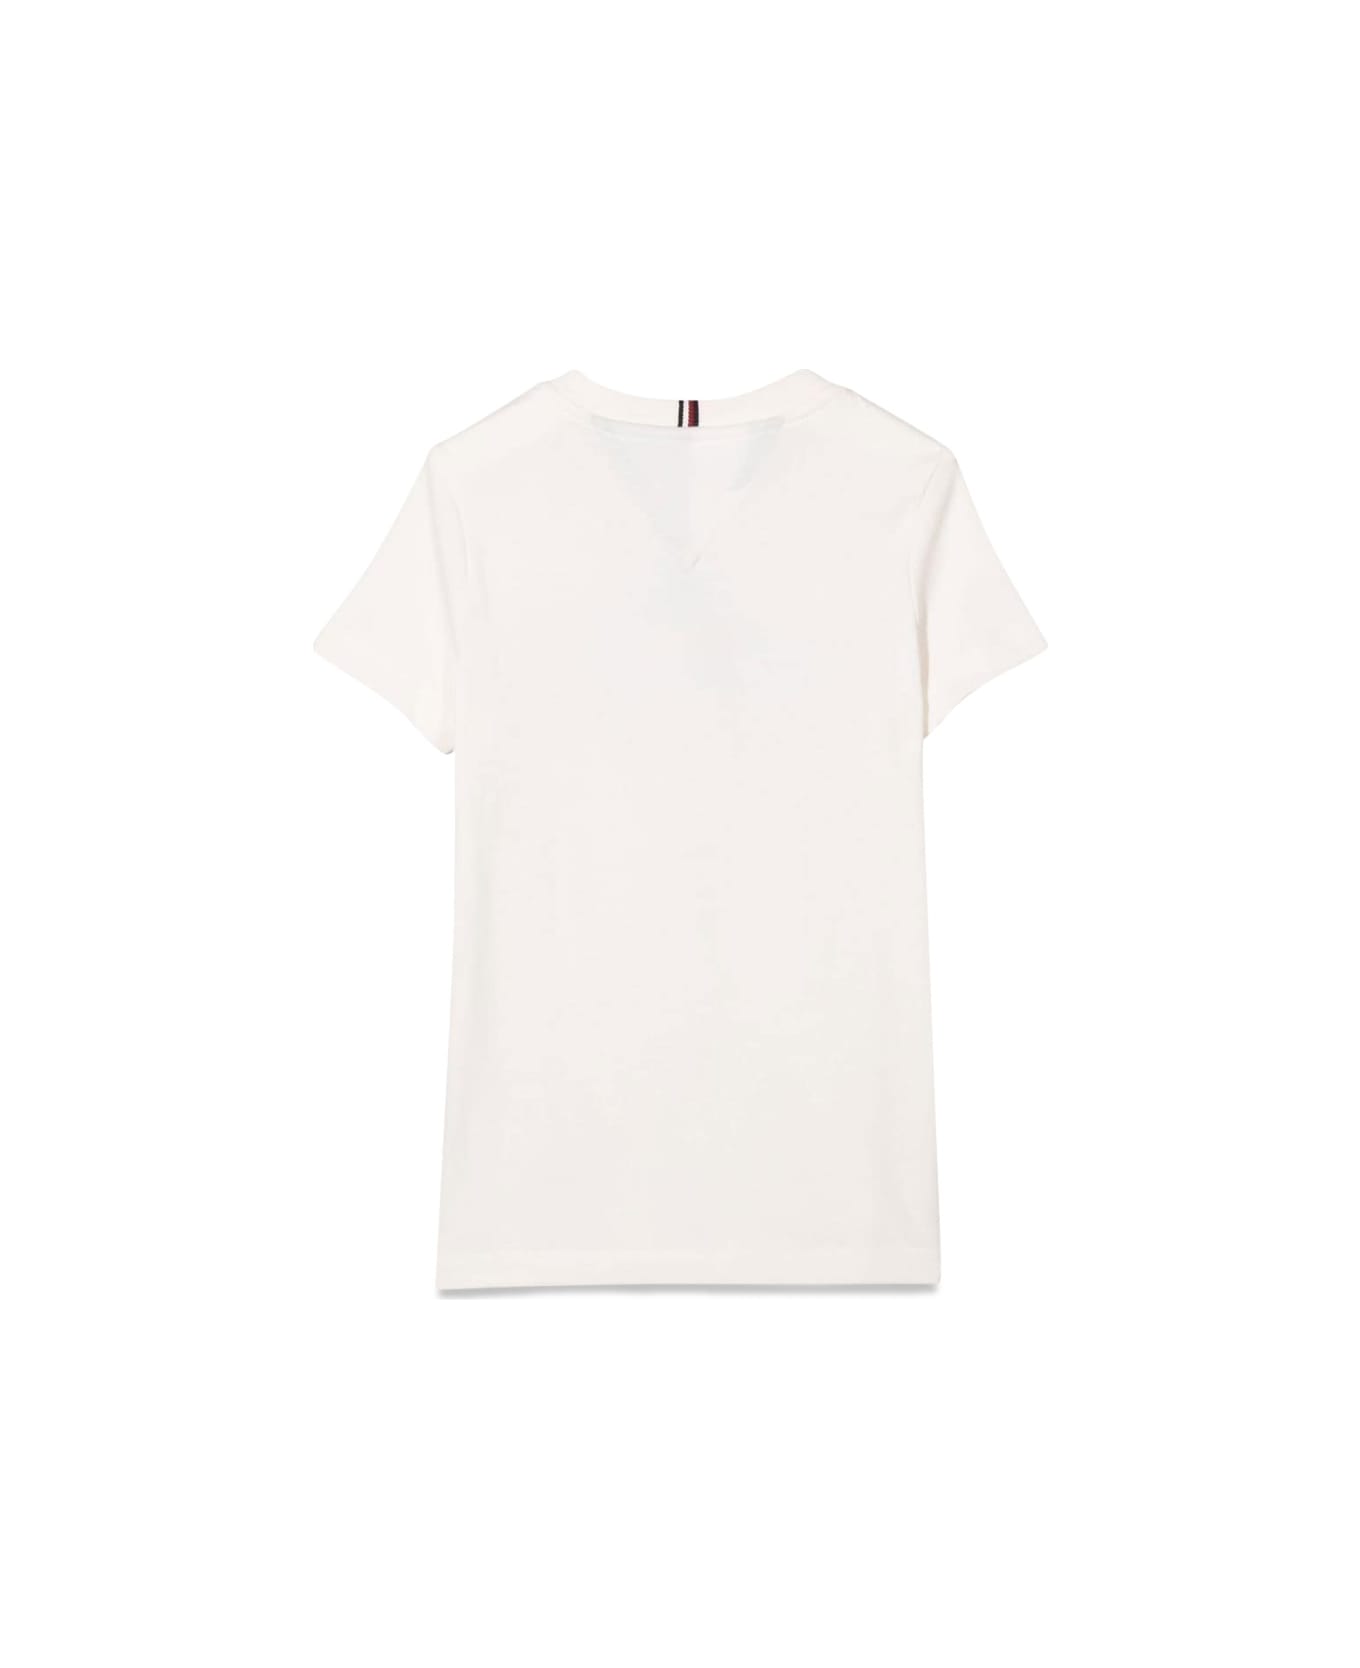 Tommy Hilfiger M/c Varsity T-shirt - WHITE